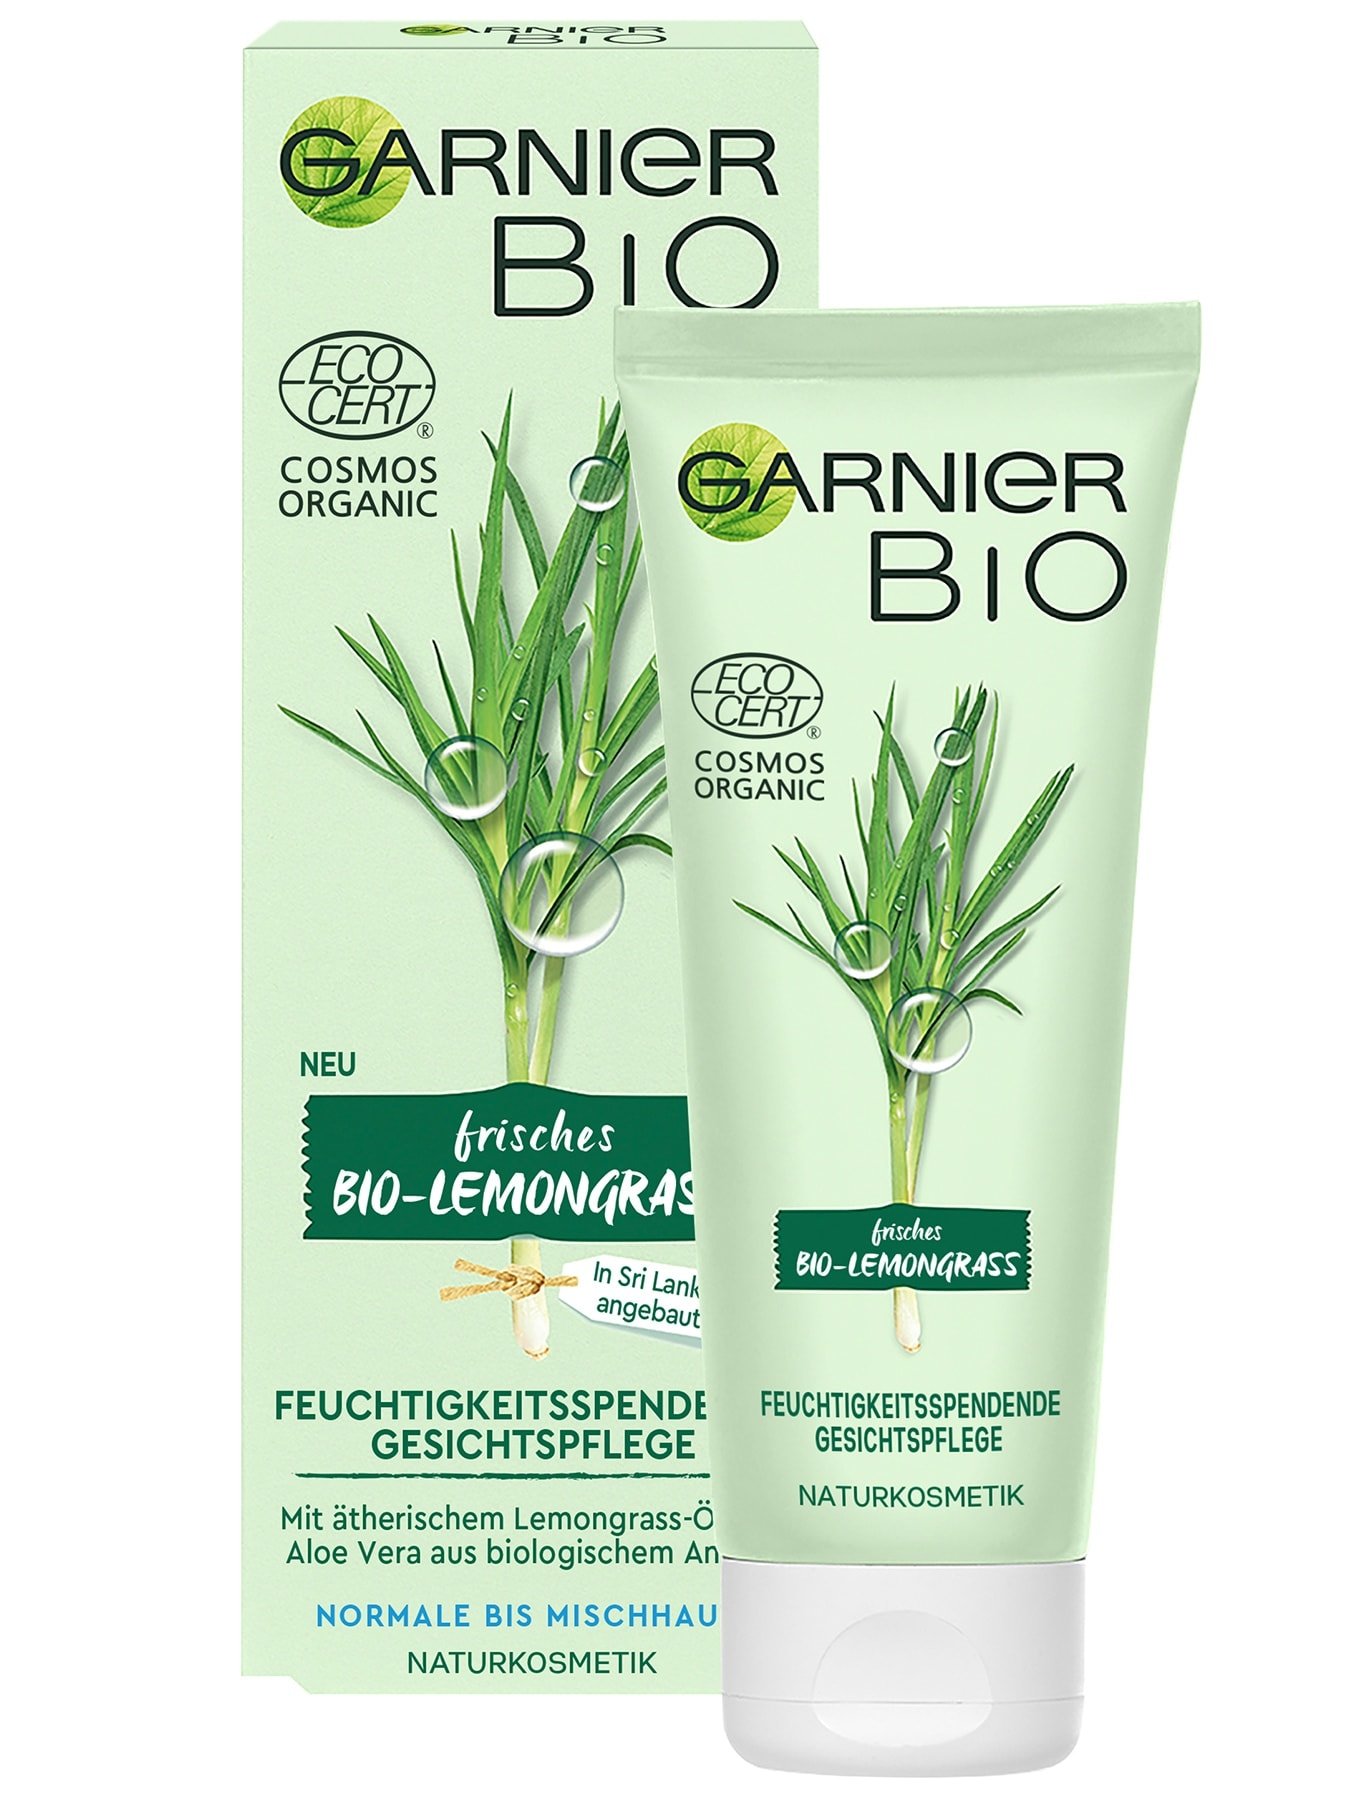 Garnier Bio Lemongrass Feuchtigkeitsspendende Gesichtspflege - Ansicht Produkt & Verpackung